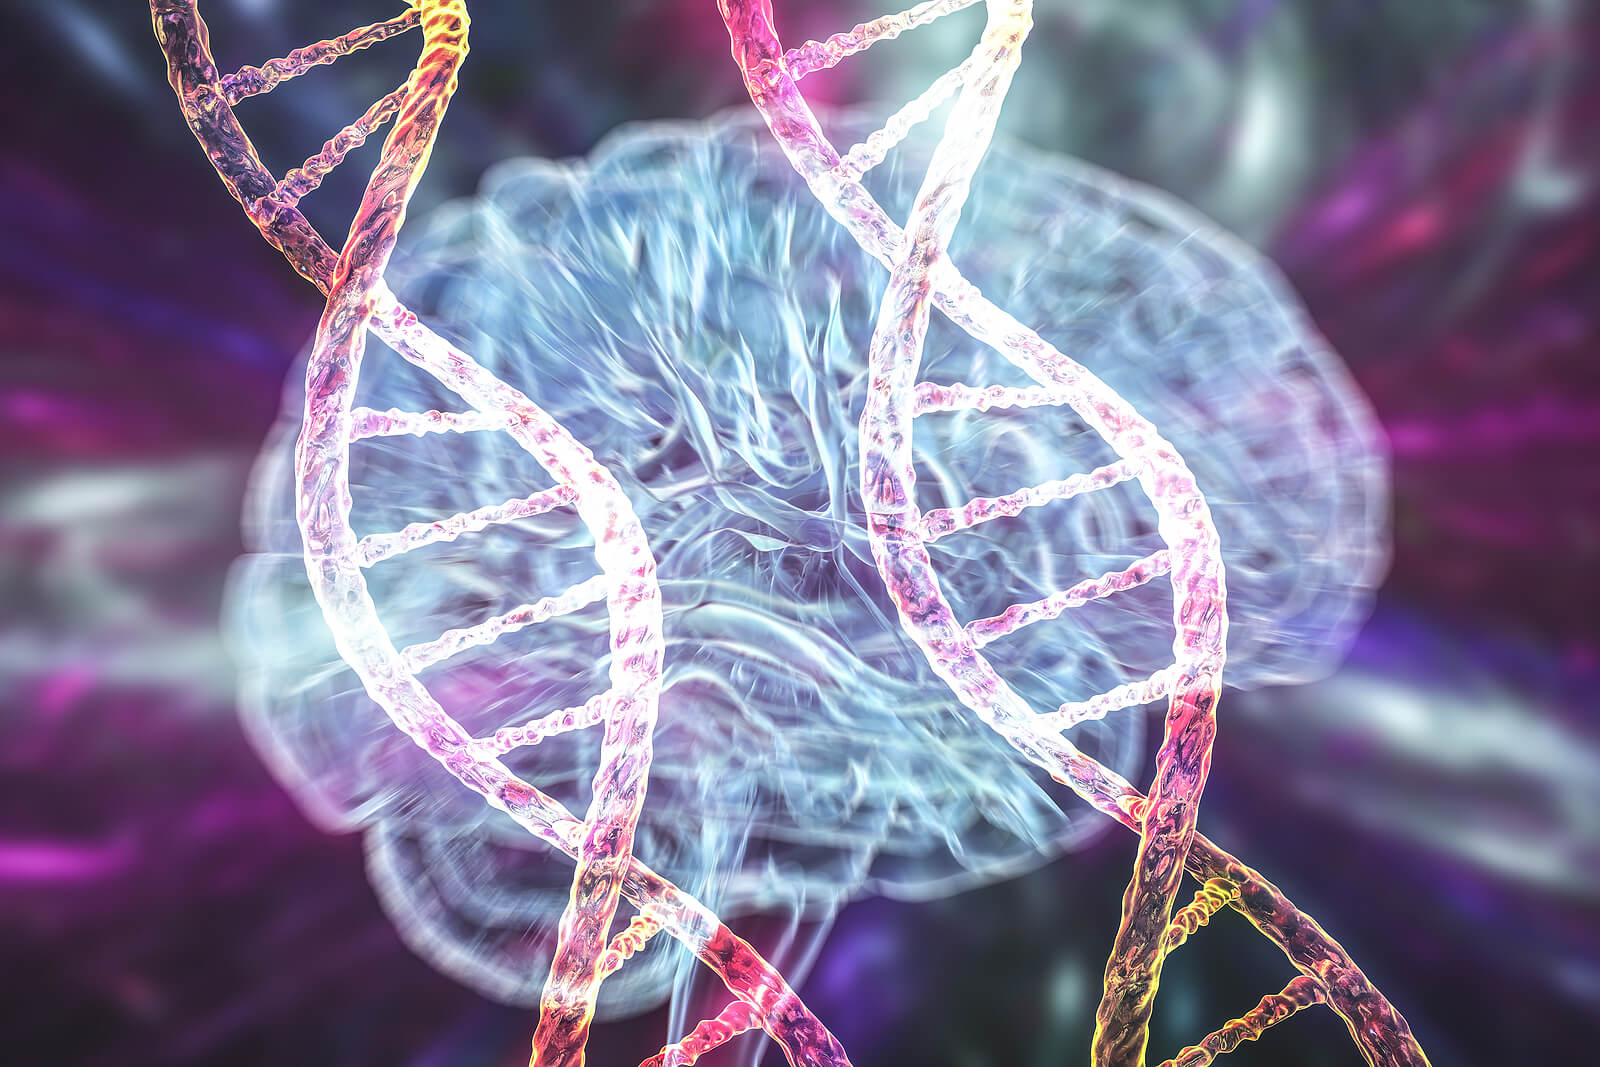 Las causas y factores de riesgo de la enfermedad de Parkinson incluyen la genética